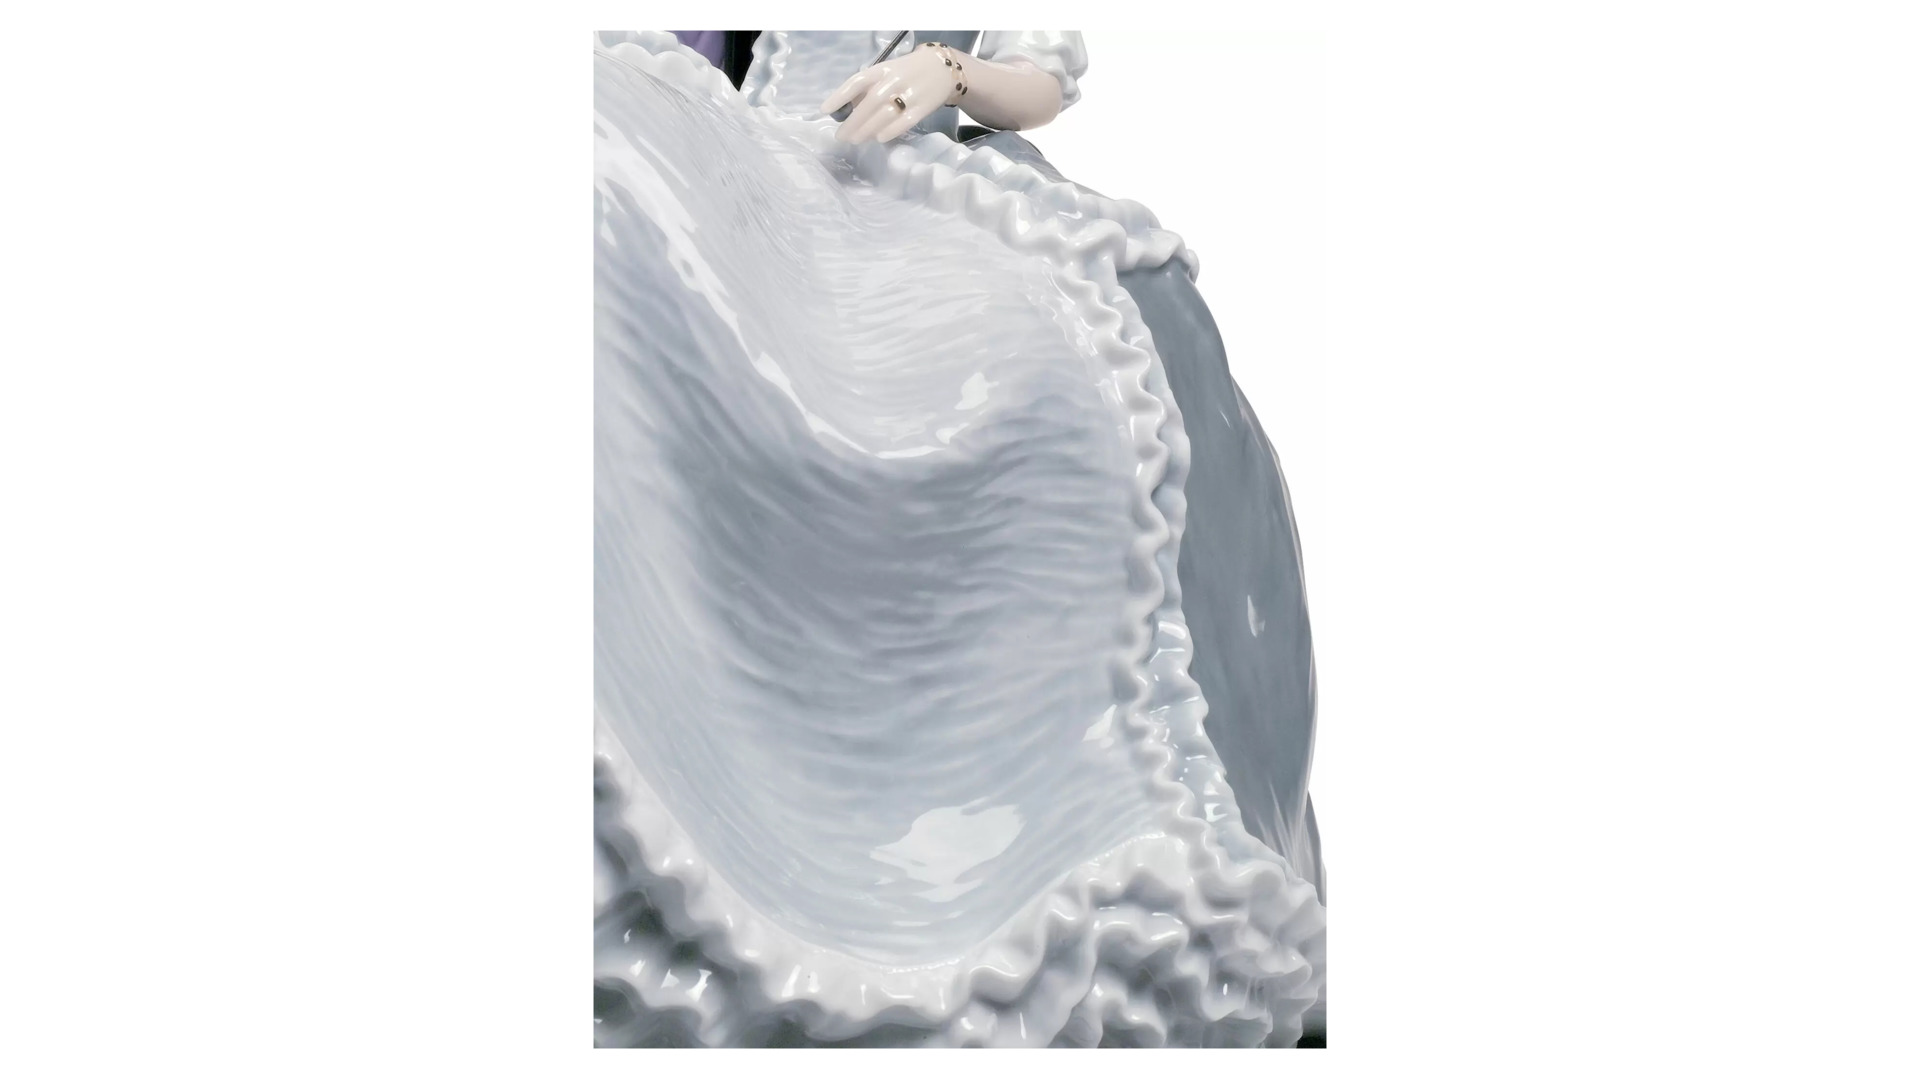 Фигурка Lladro Дама рококо на балу 25х31 см, фарфор